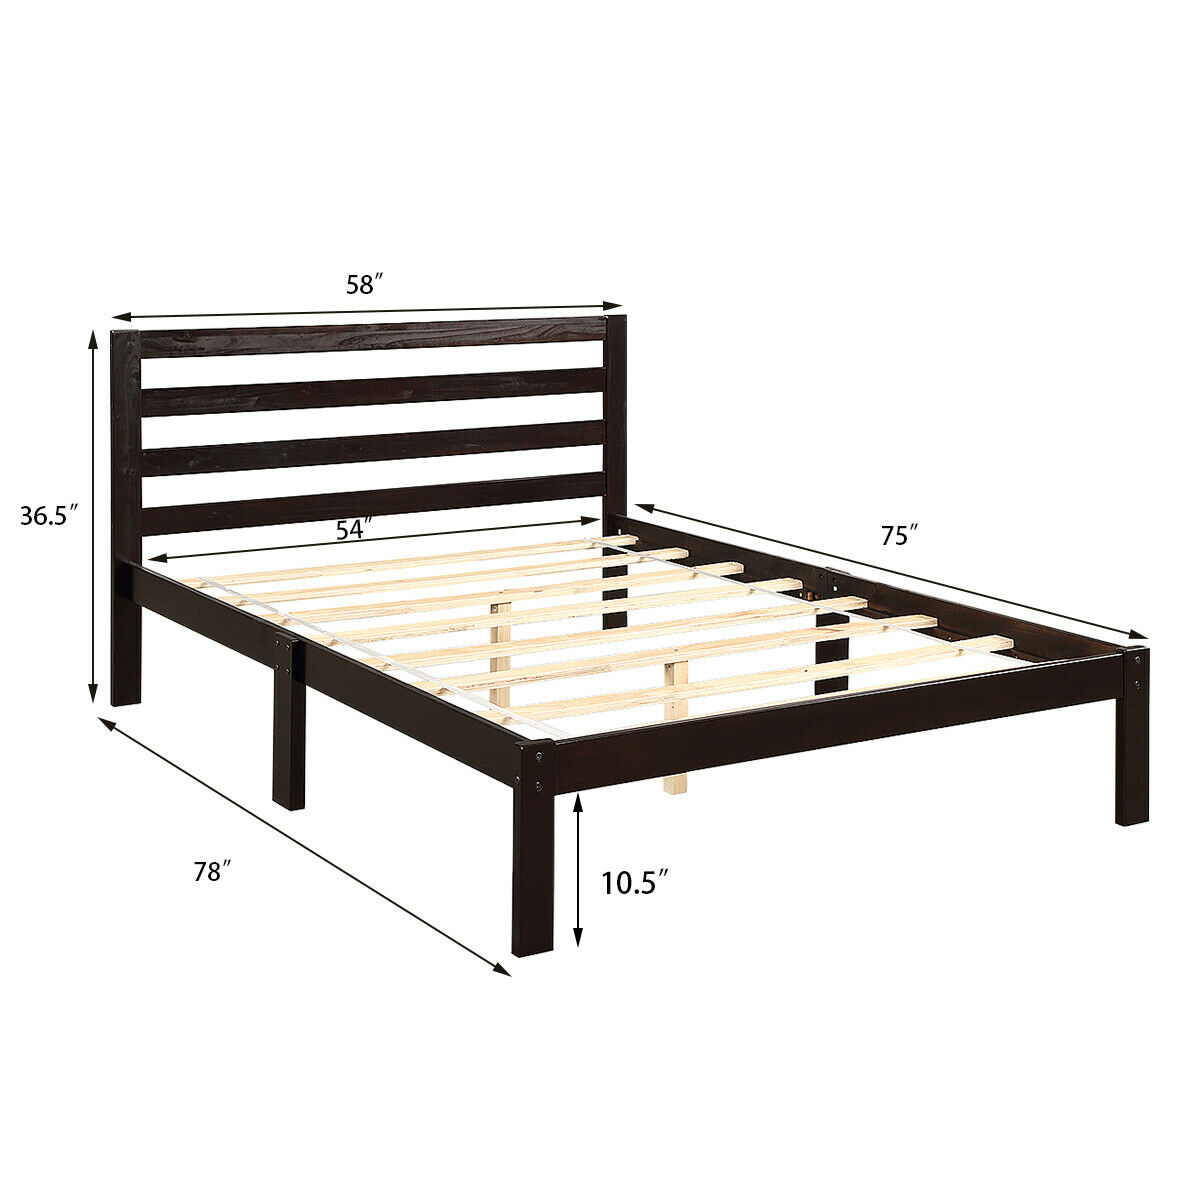 Gymax Solid Wood Platform Bed W, Full Size Wooden Slat Bed Frame